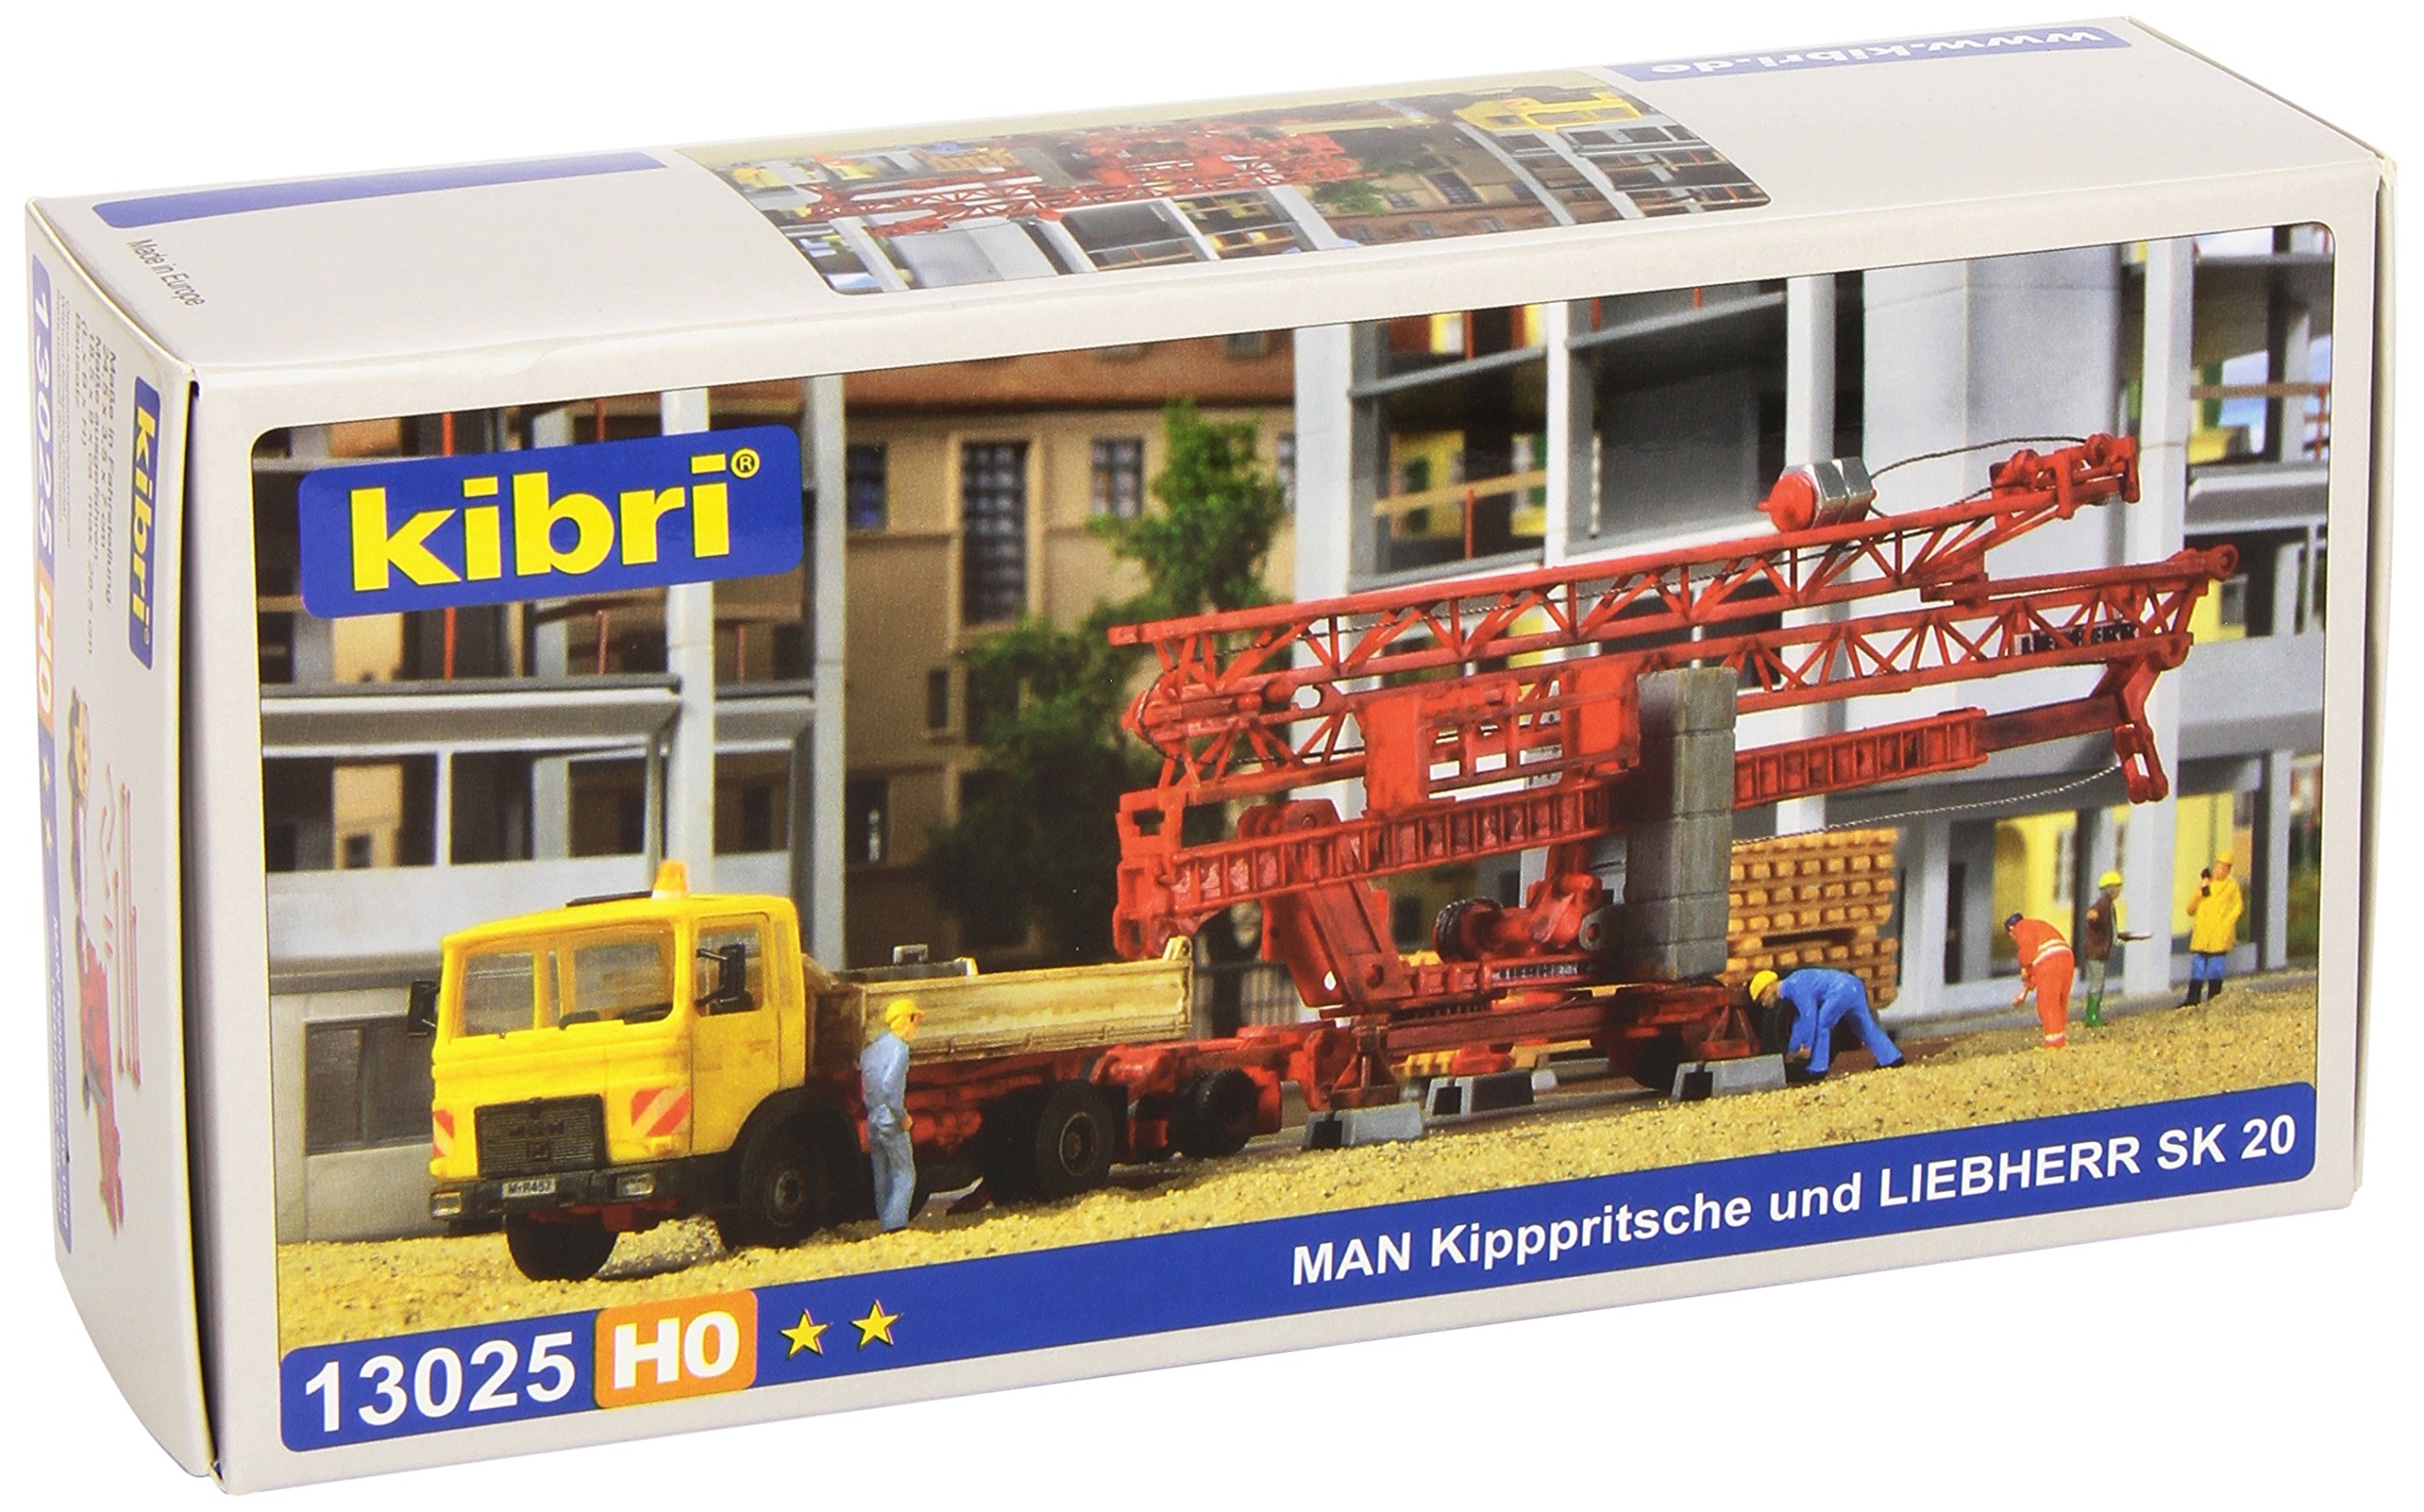 Kibri 13025 - H0 MAN Kipppritsche und Liebherr SK 20